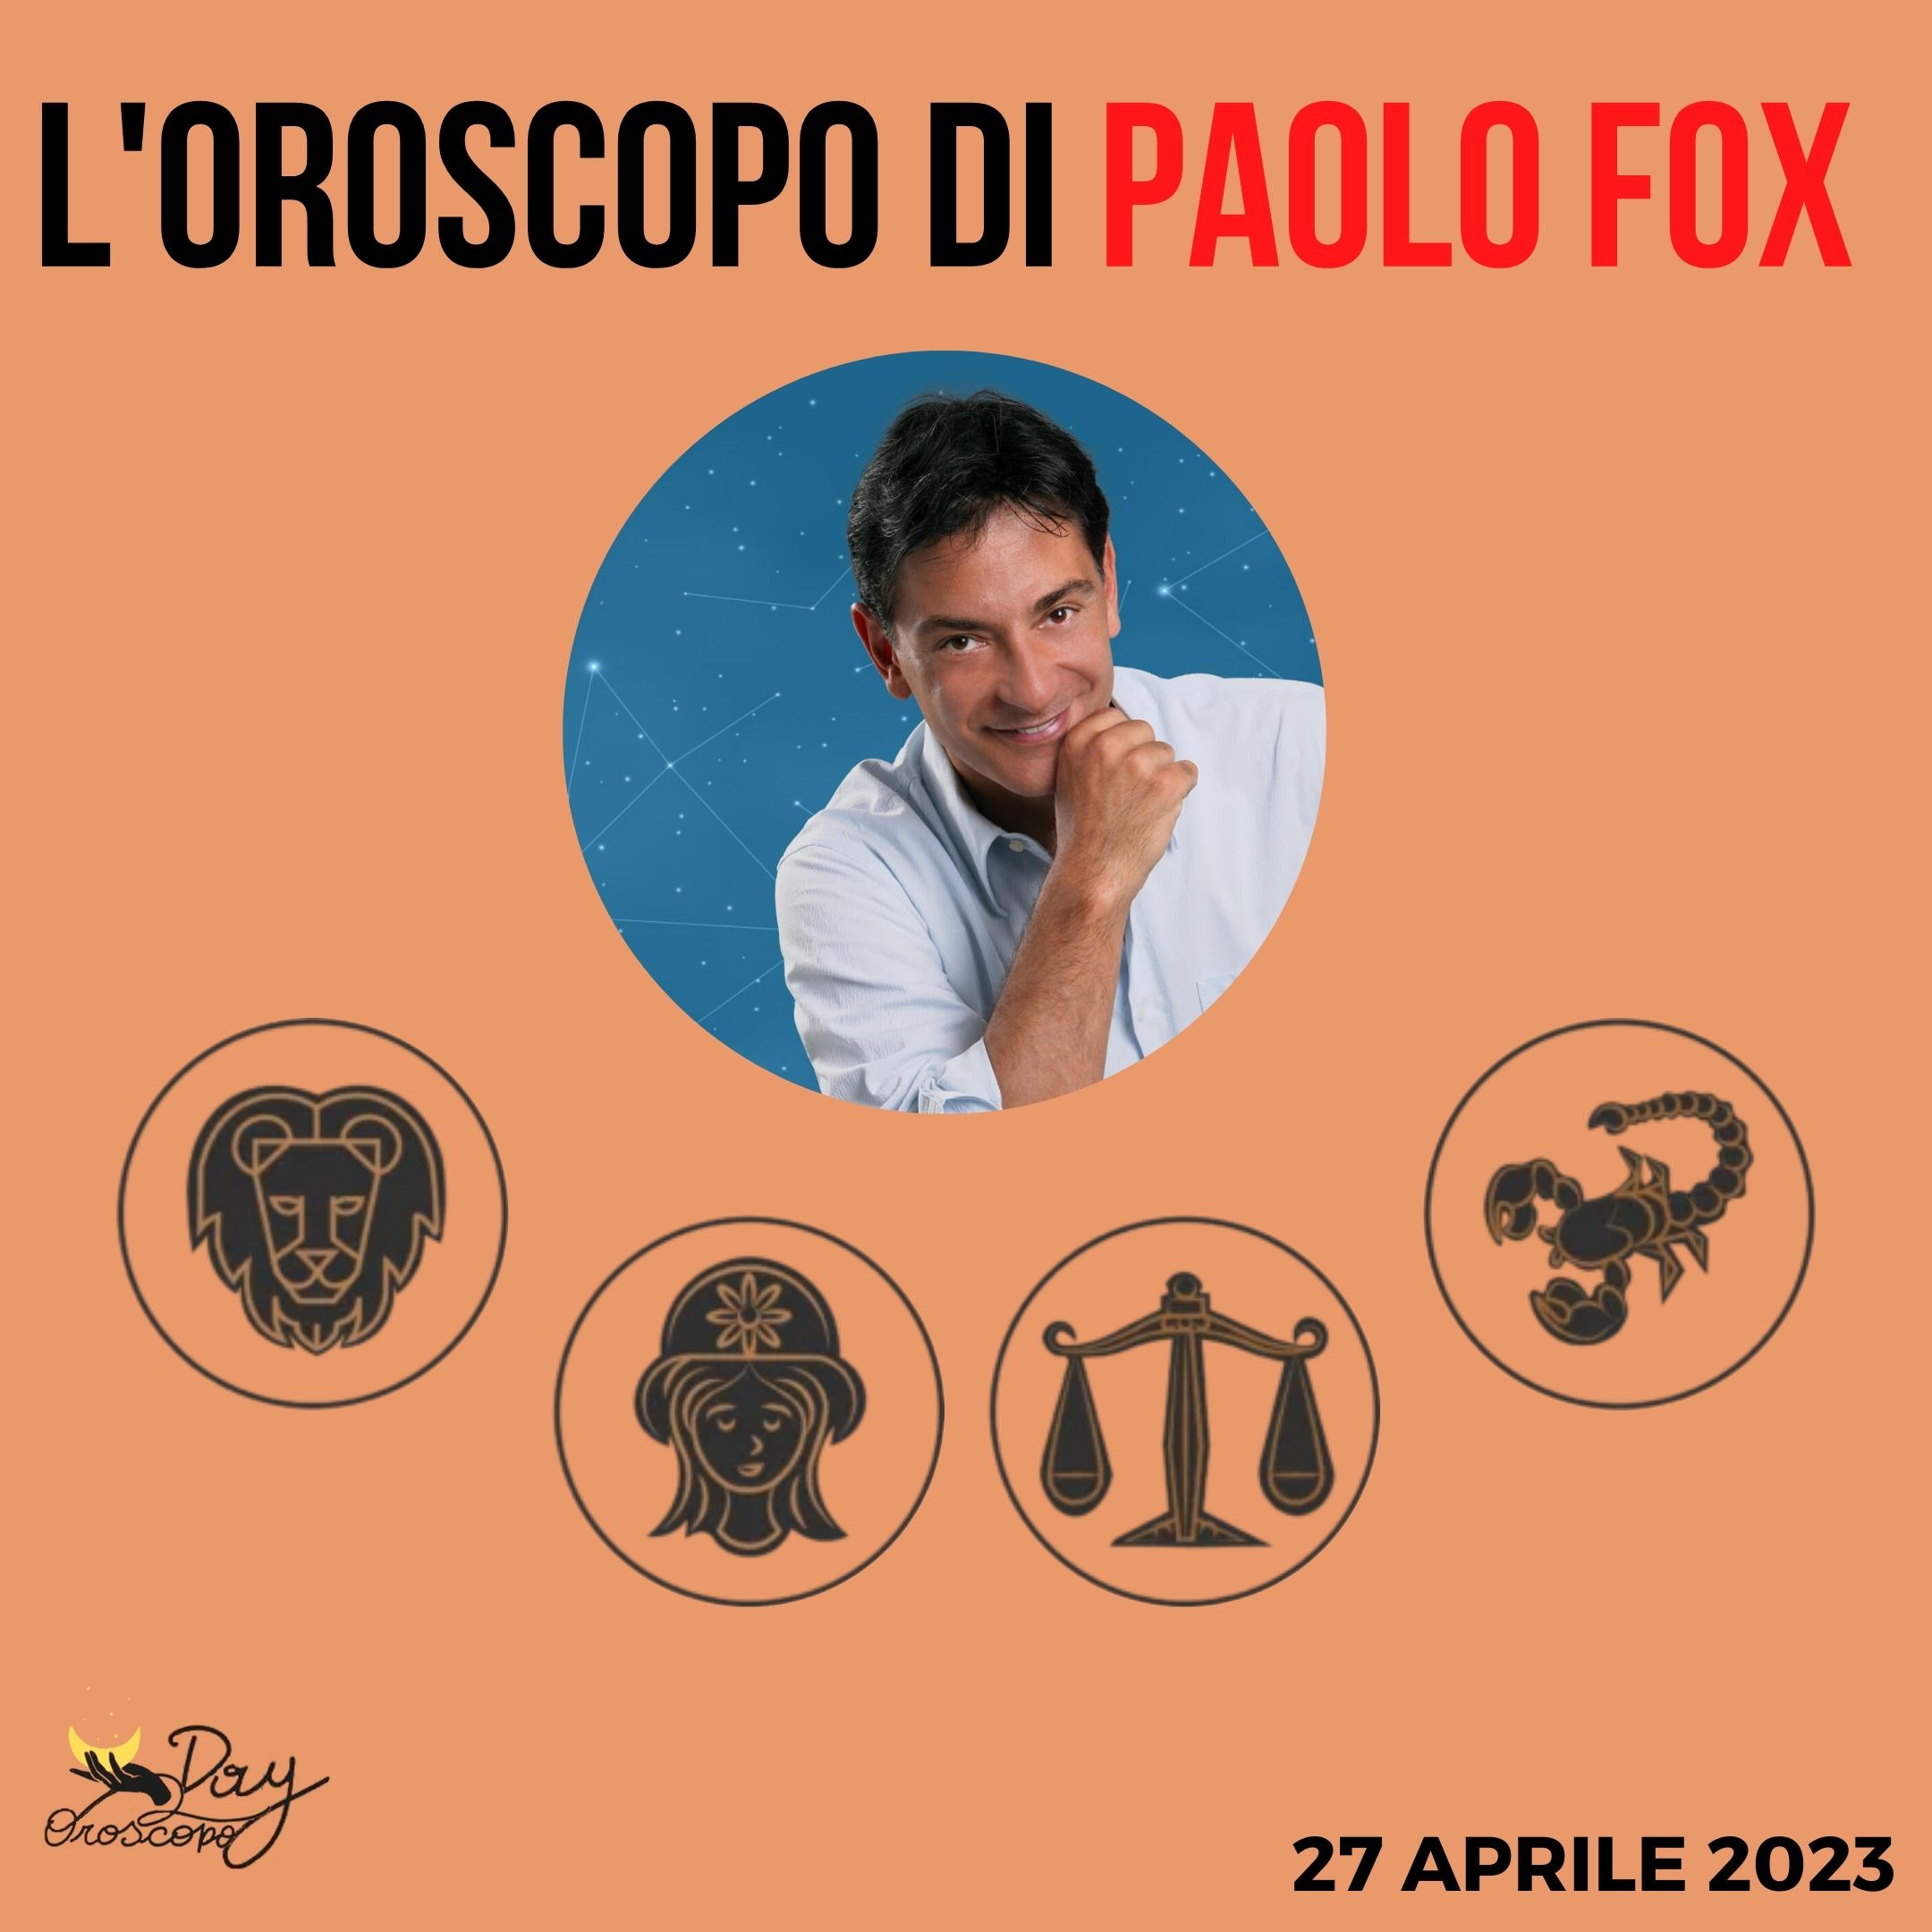 Oroscopo oggi domani Paolo Fox 27 aprile Leone Vergine Bilancia Scorpione